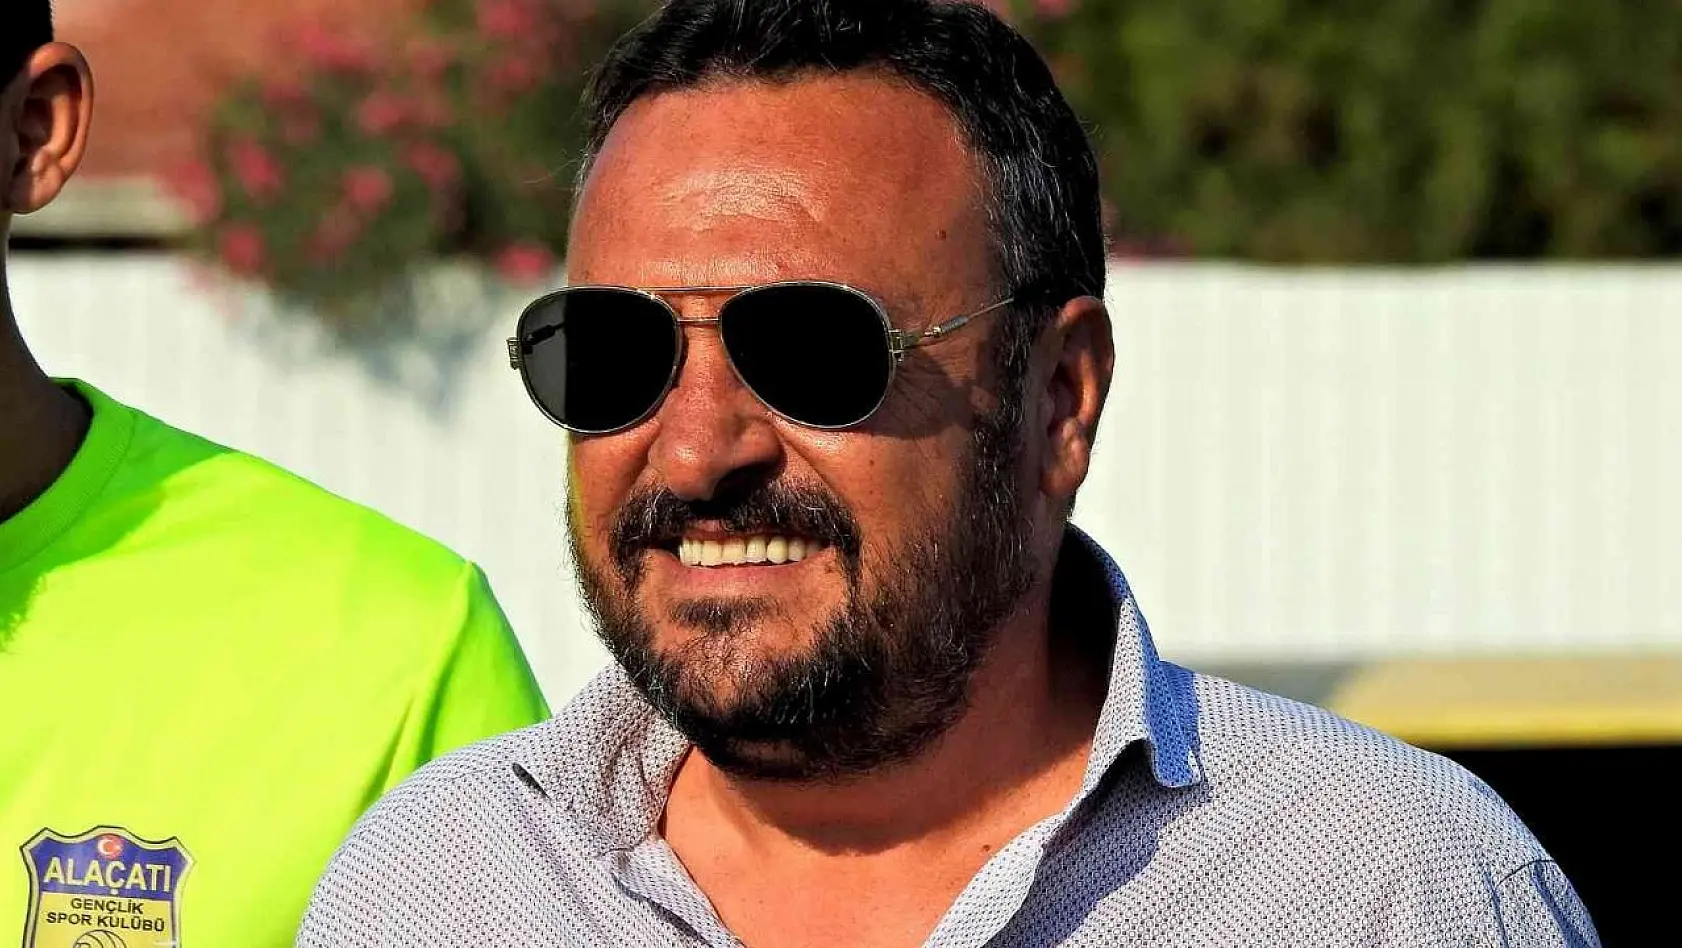 Varhan, Alaçatıspor Kulübü başkanlığından ayrıldı